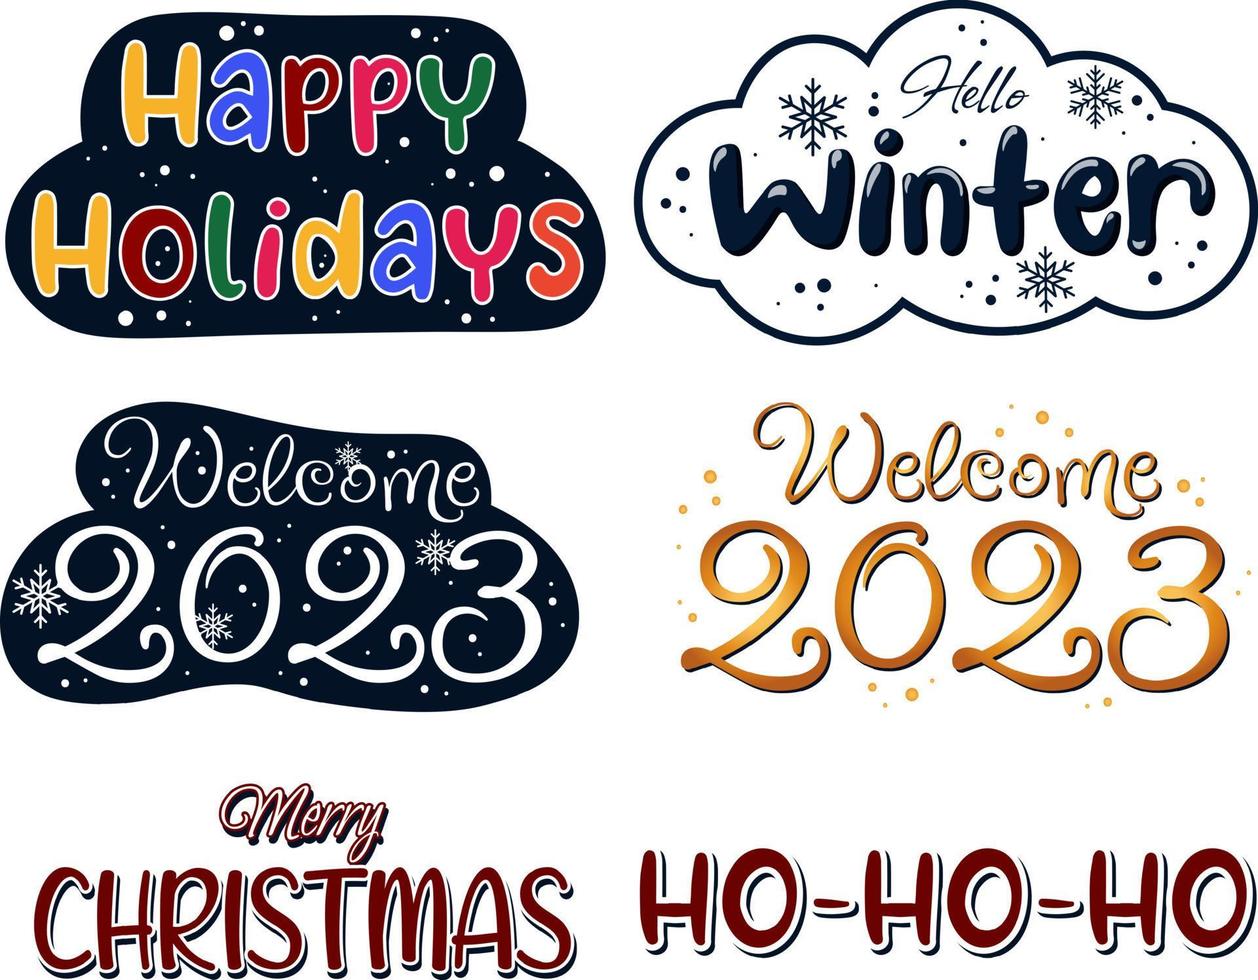 desenho de letras definido no tema de inverno e natal. olá inverno, bem-vindo 2023, feliz natal e ho-ho-ho vetor